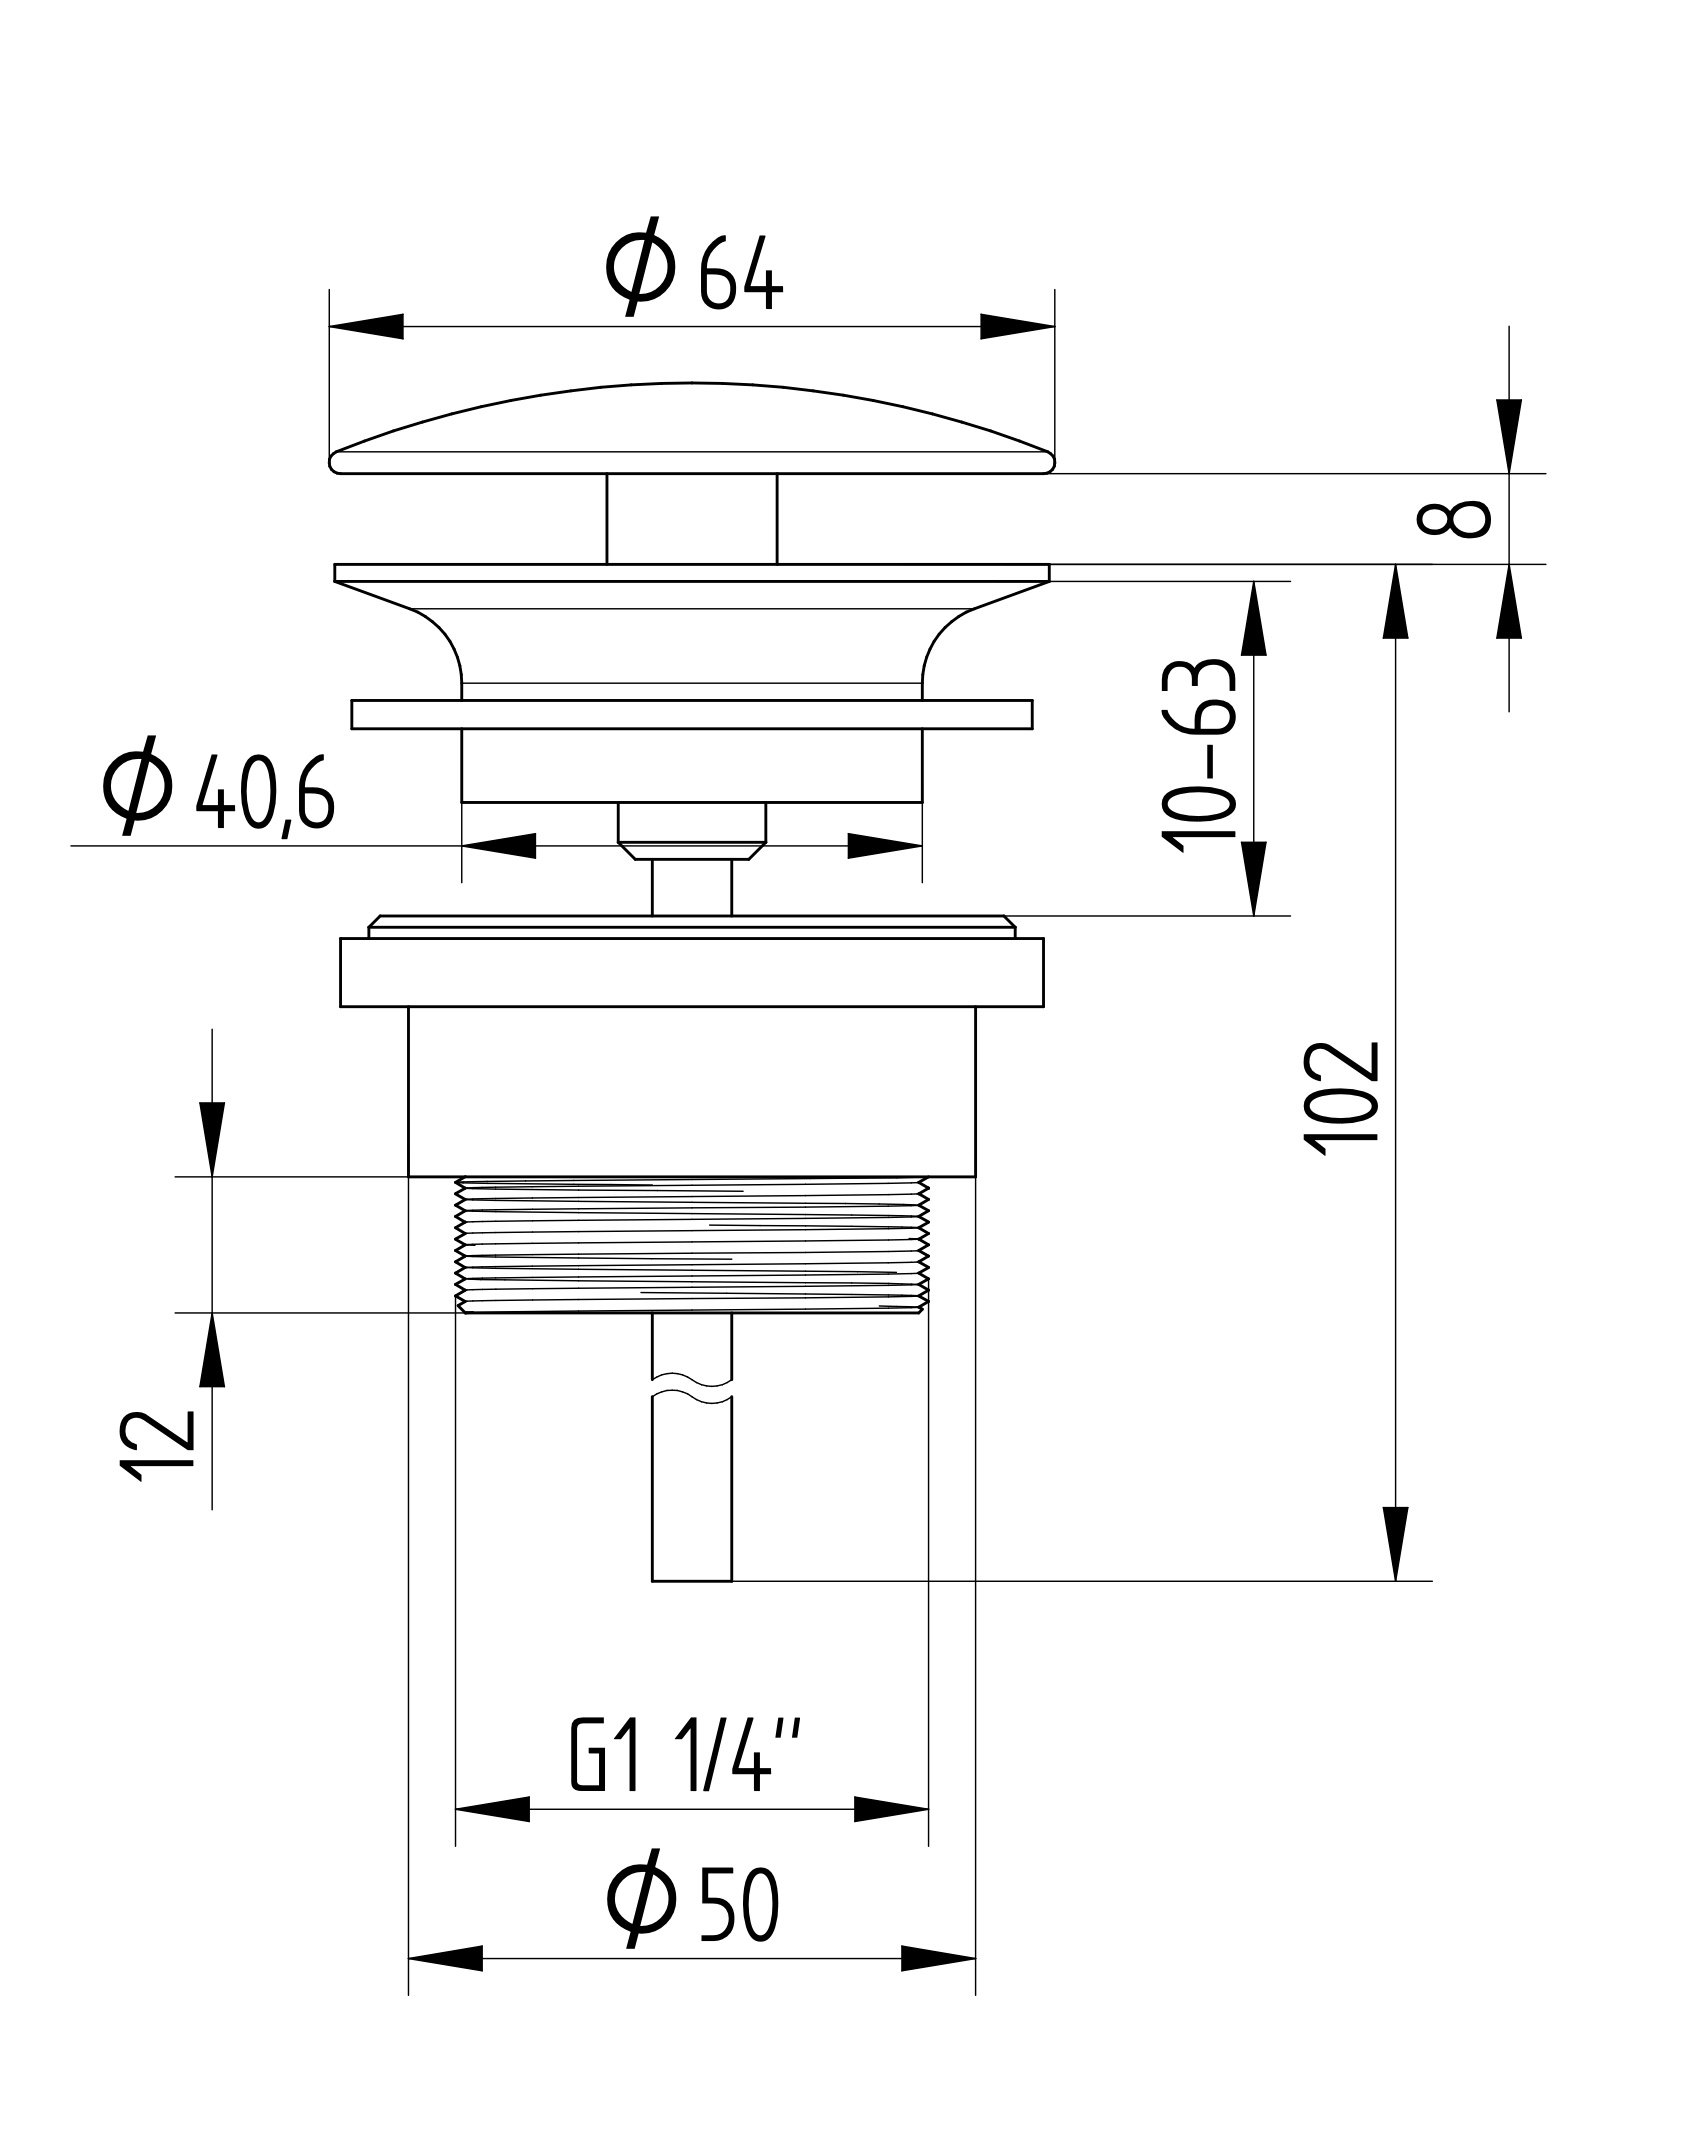 Avenraius Design-Schaftventil 1 ¼" rund ohne Verschluss, Ø 64 mm (900 4201 010)